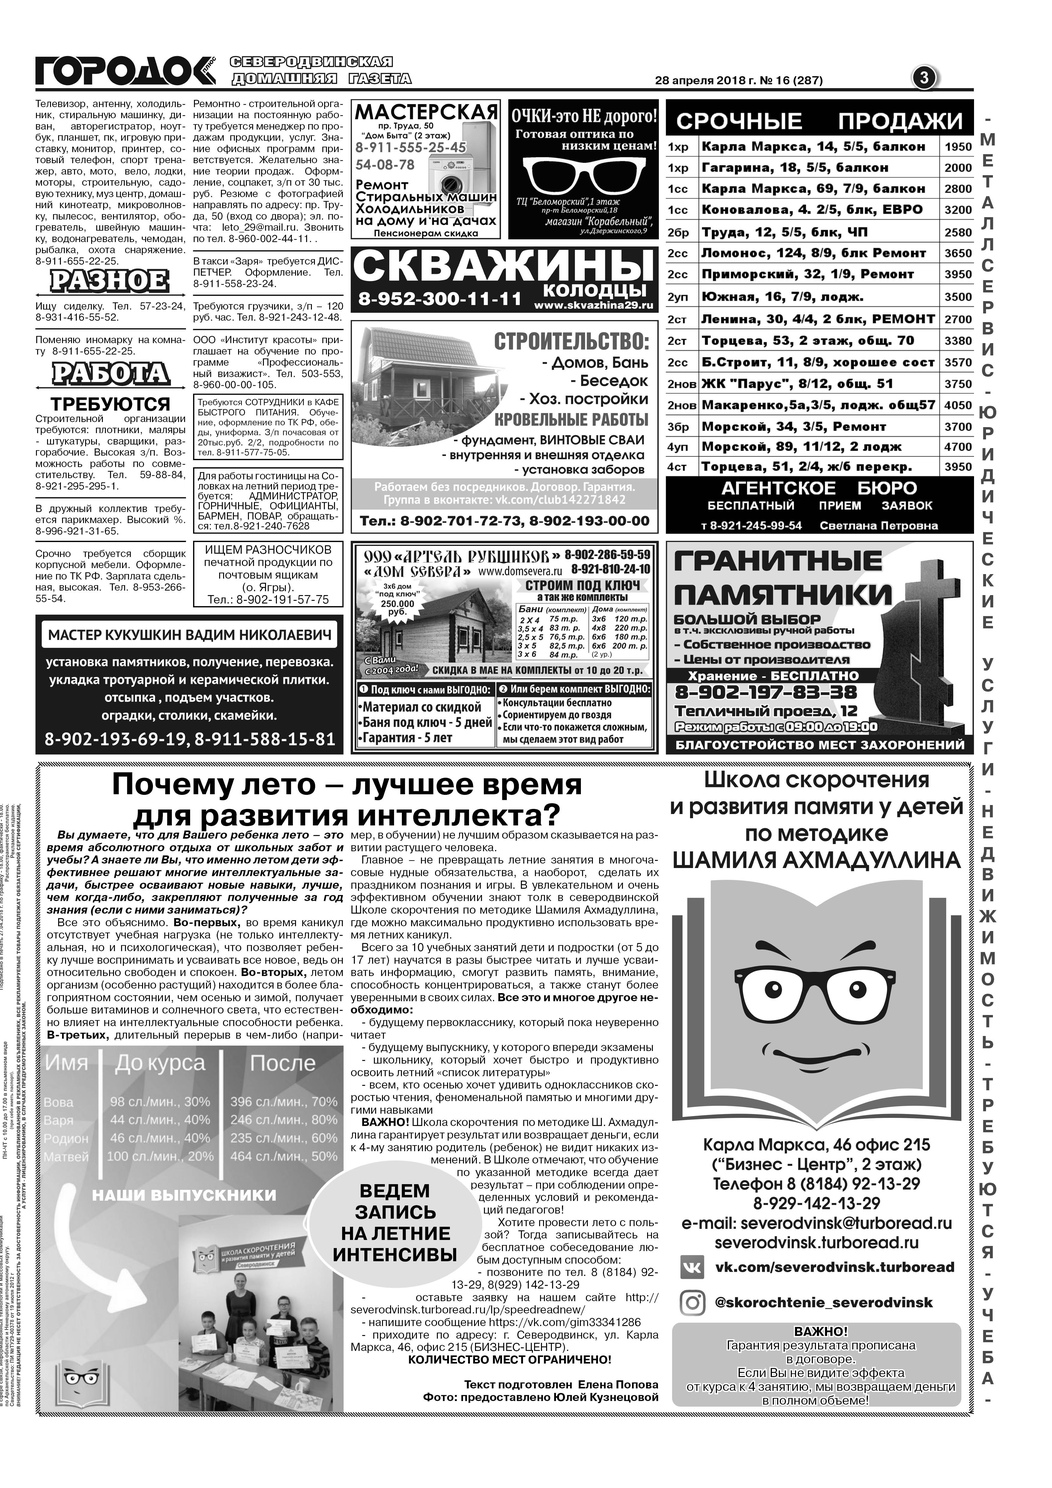 Городок плюс, выпуск номер 16 от 28 апреля 2018 года, страница 3.